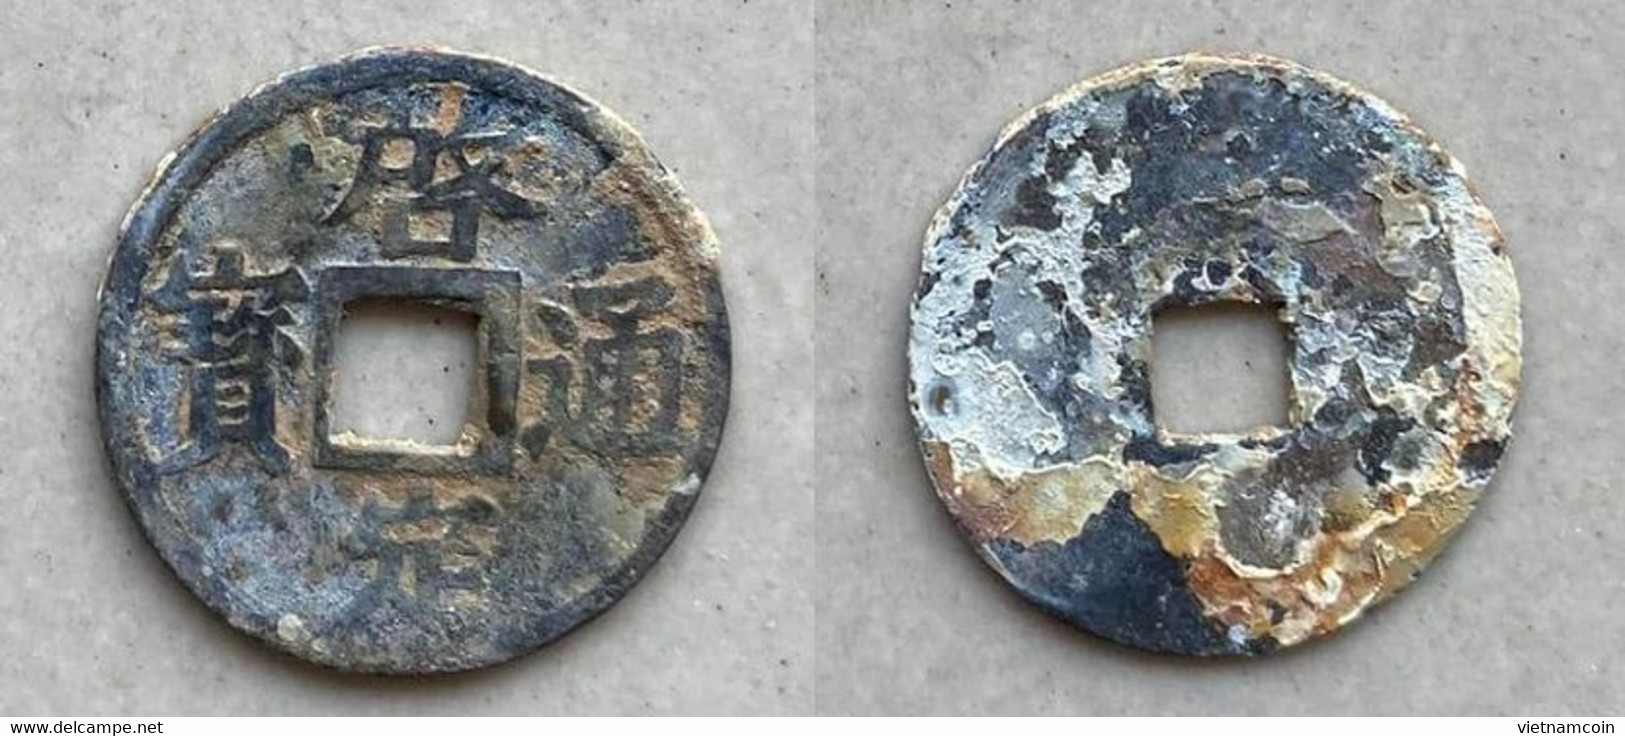 Ancient Annam Coin  Khai Dinh Thong Bao 1916-1925 - Vietnam